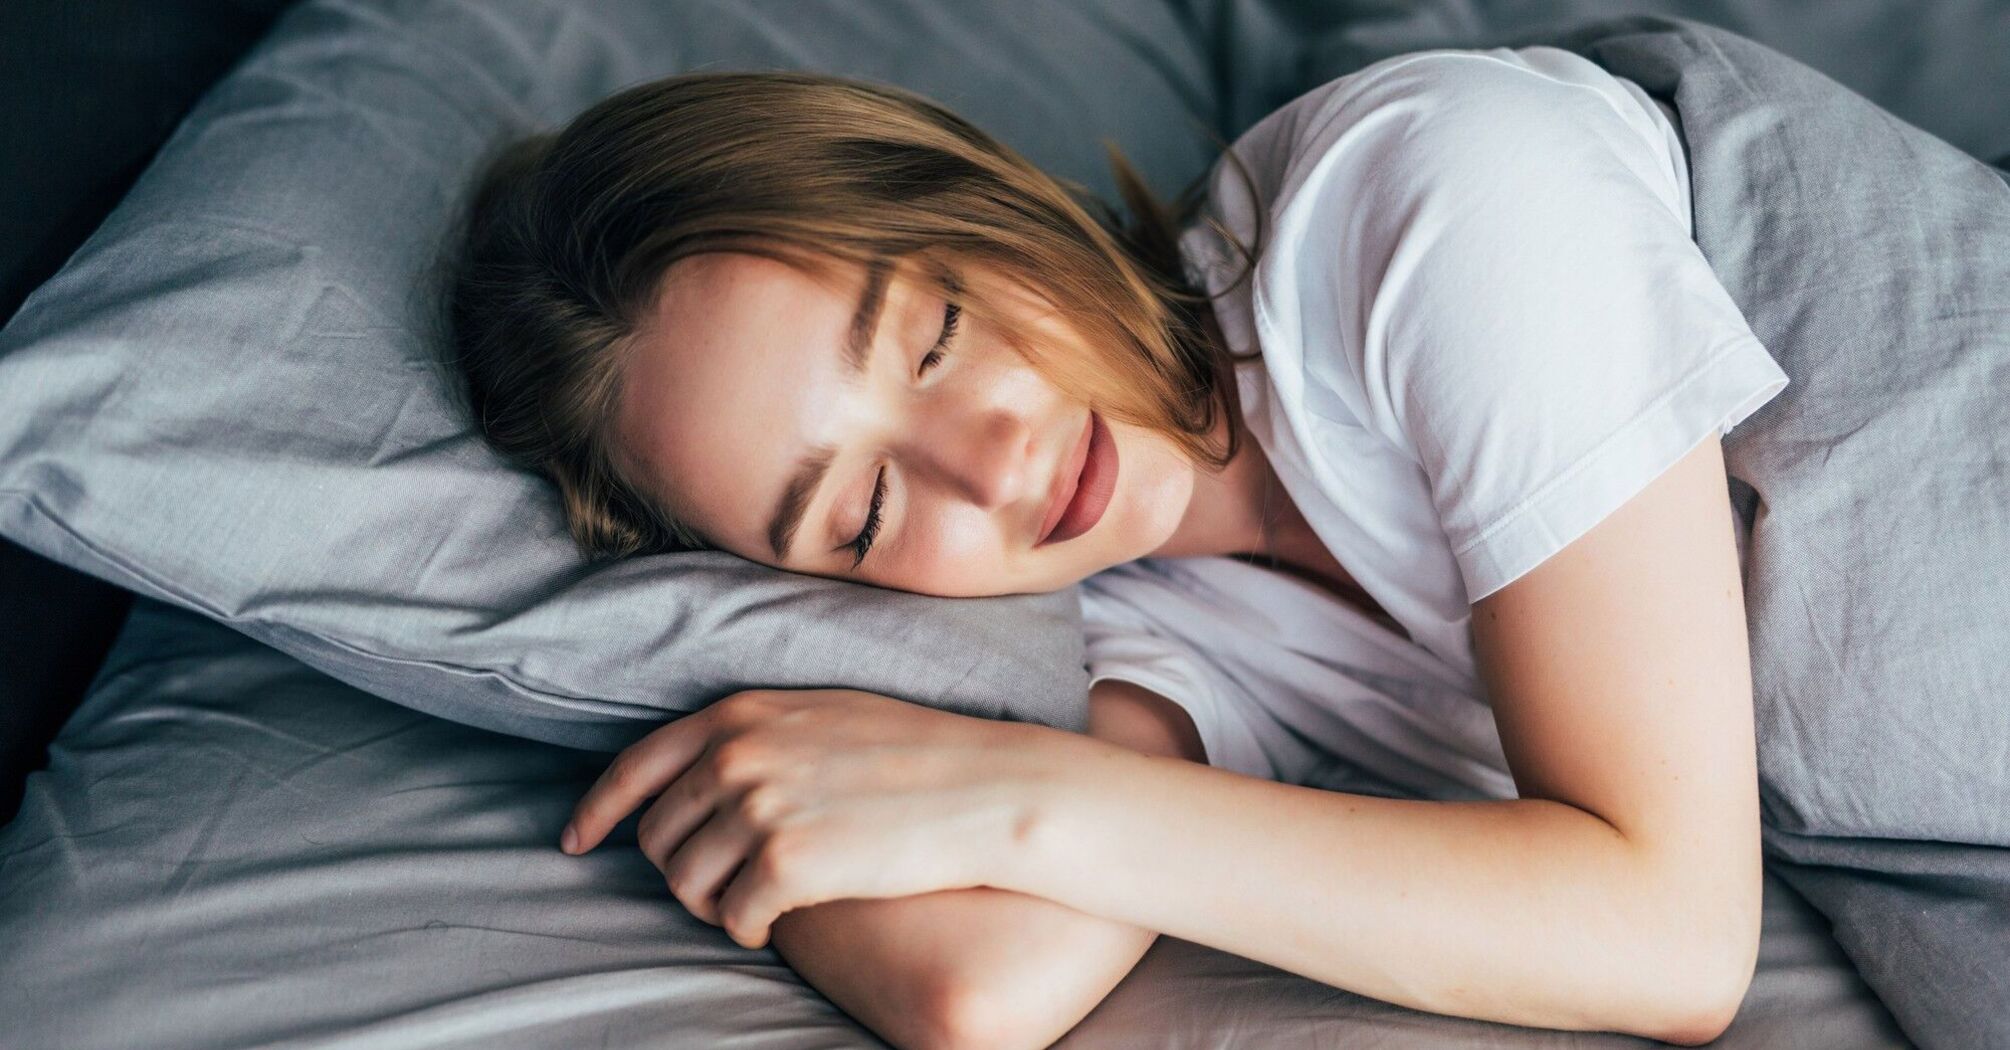 Експерти розповіли, як заснути за 2 хвилини, якщо ви прокинулися серед ночі